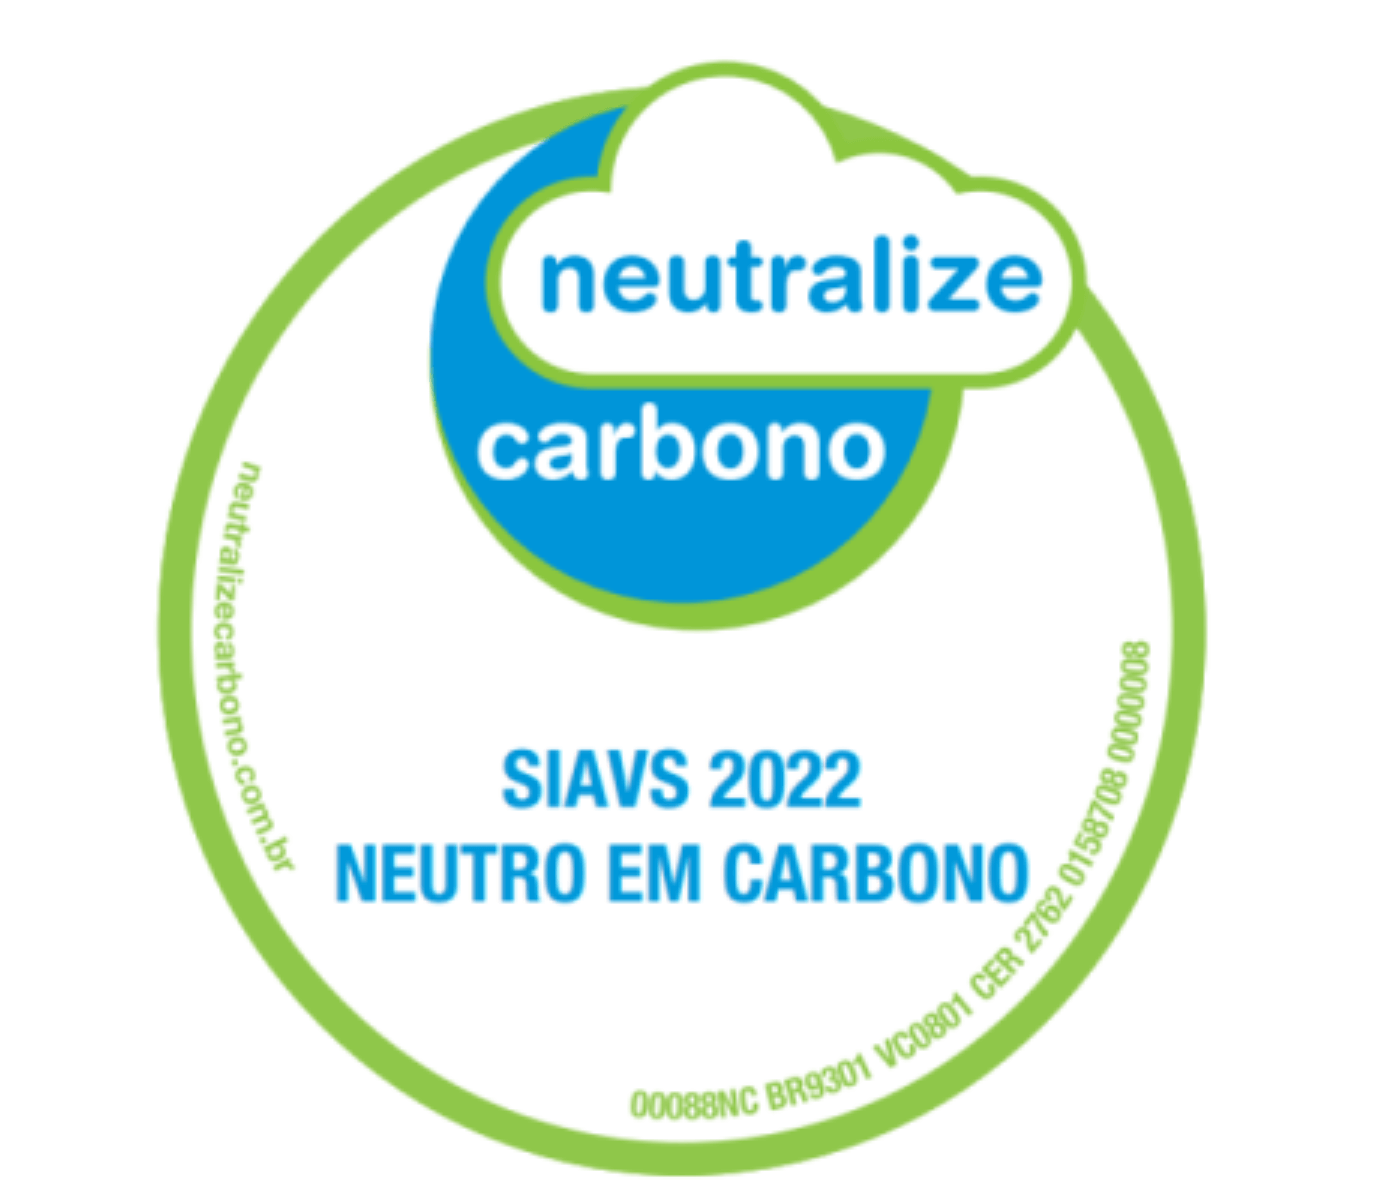 SIAVS 2022 neutraliza 158 toneladas de CO2